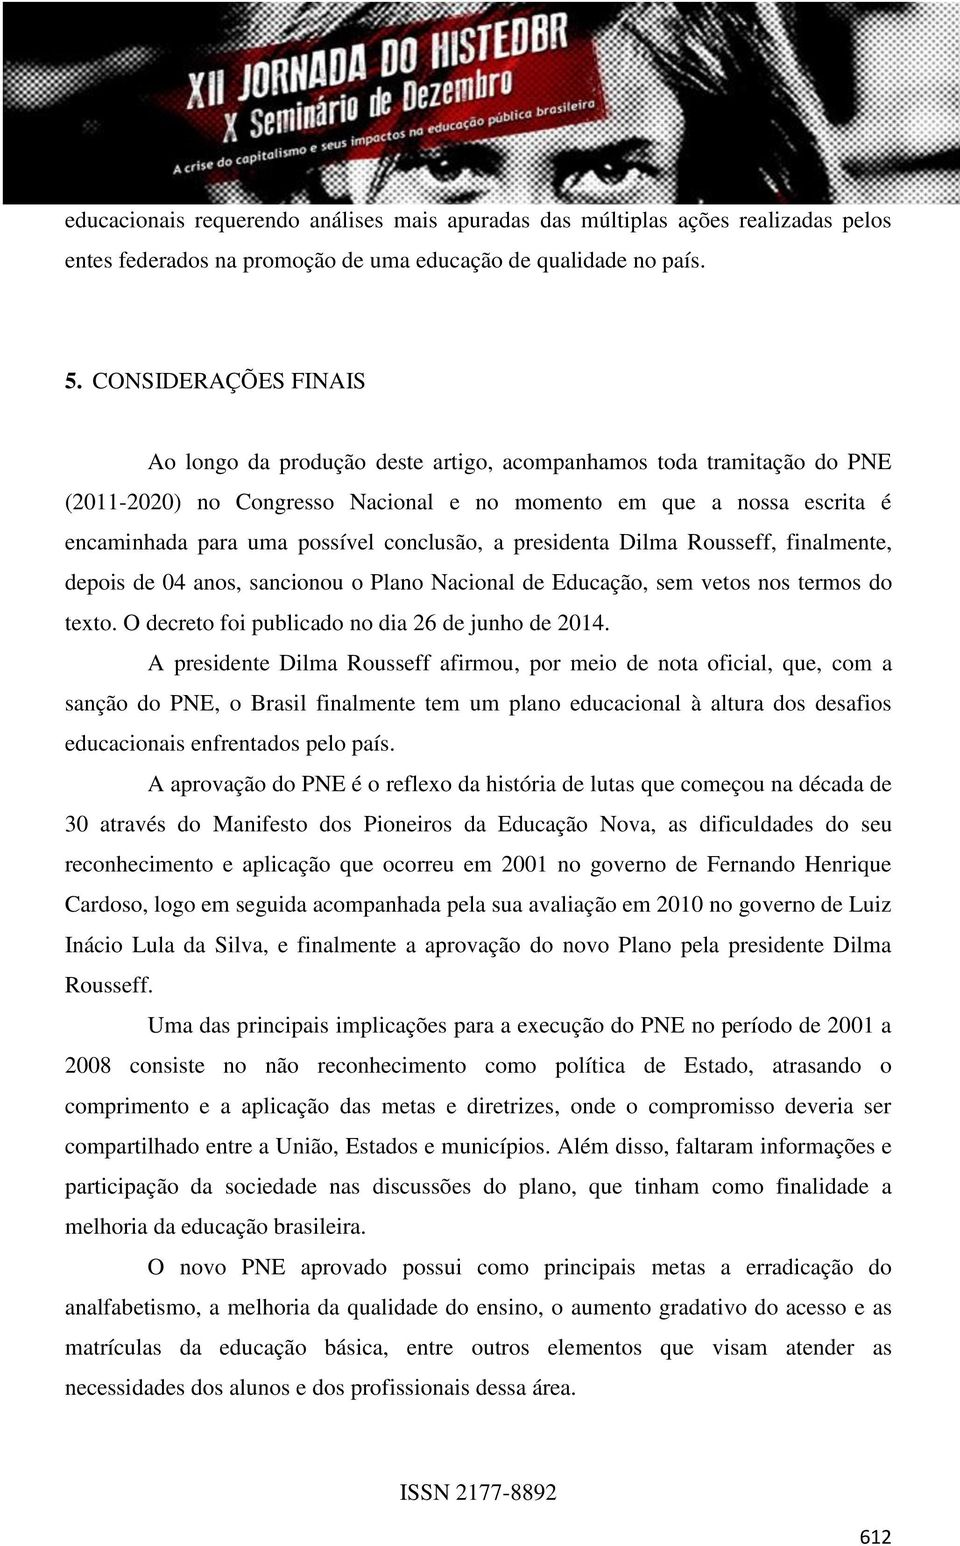 conclusão, a presidenta Dilma Rousseff, finalmente, depois de 04 anos, sancionou o Plano Nacional de Educação, sem vetos nos termos do texto. O decreto foi publicado no dia 26 de junho de 2014.